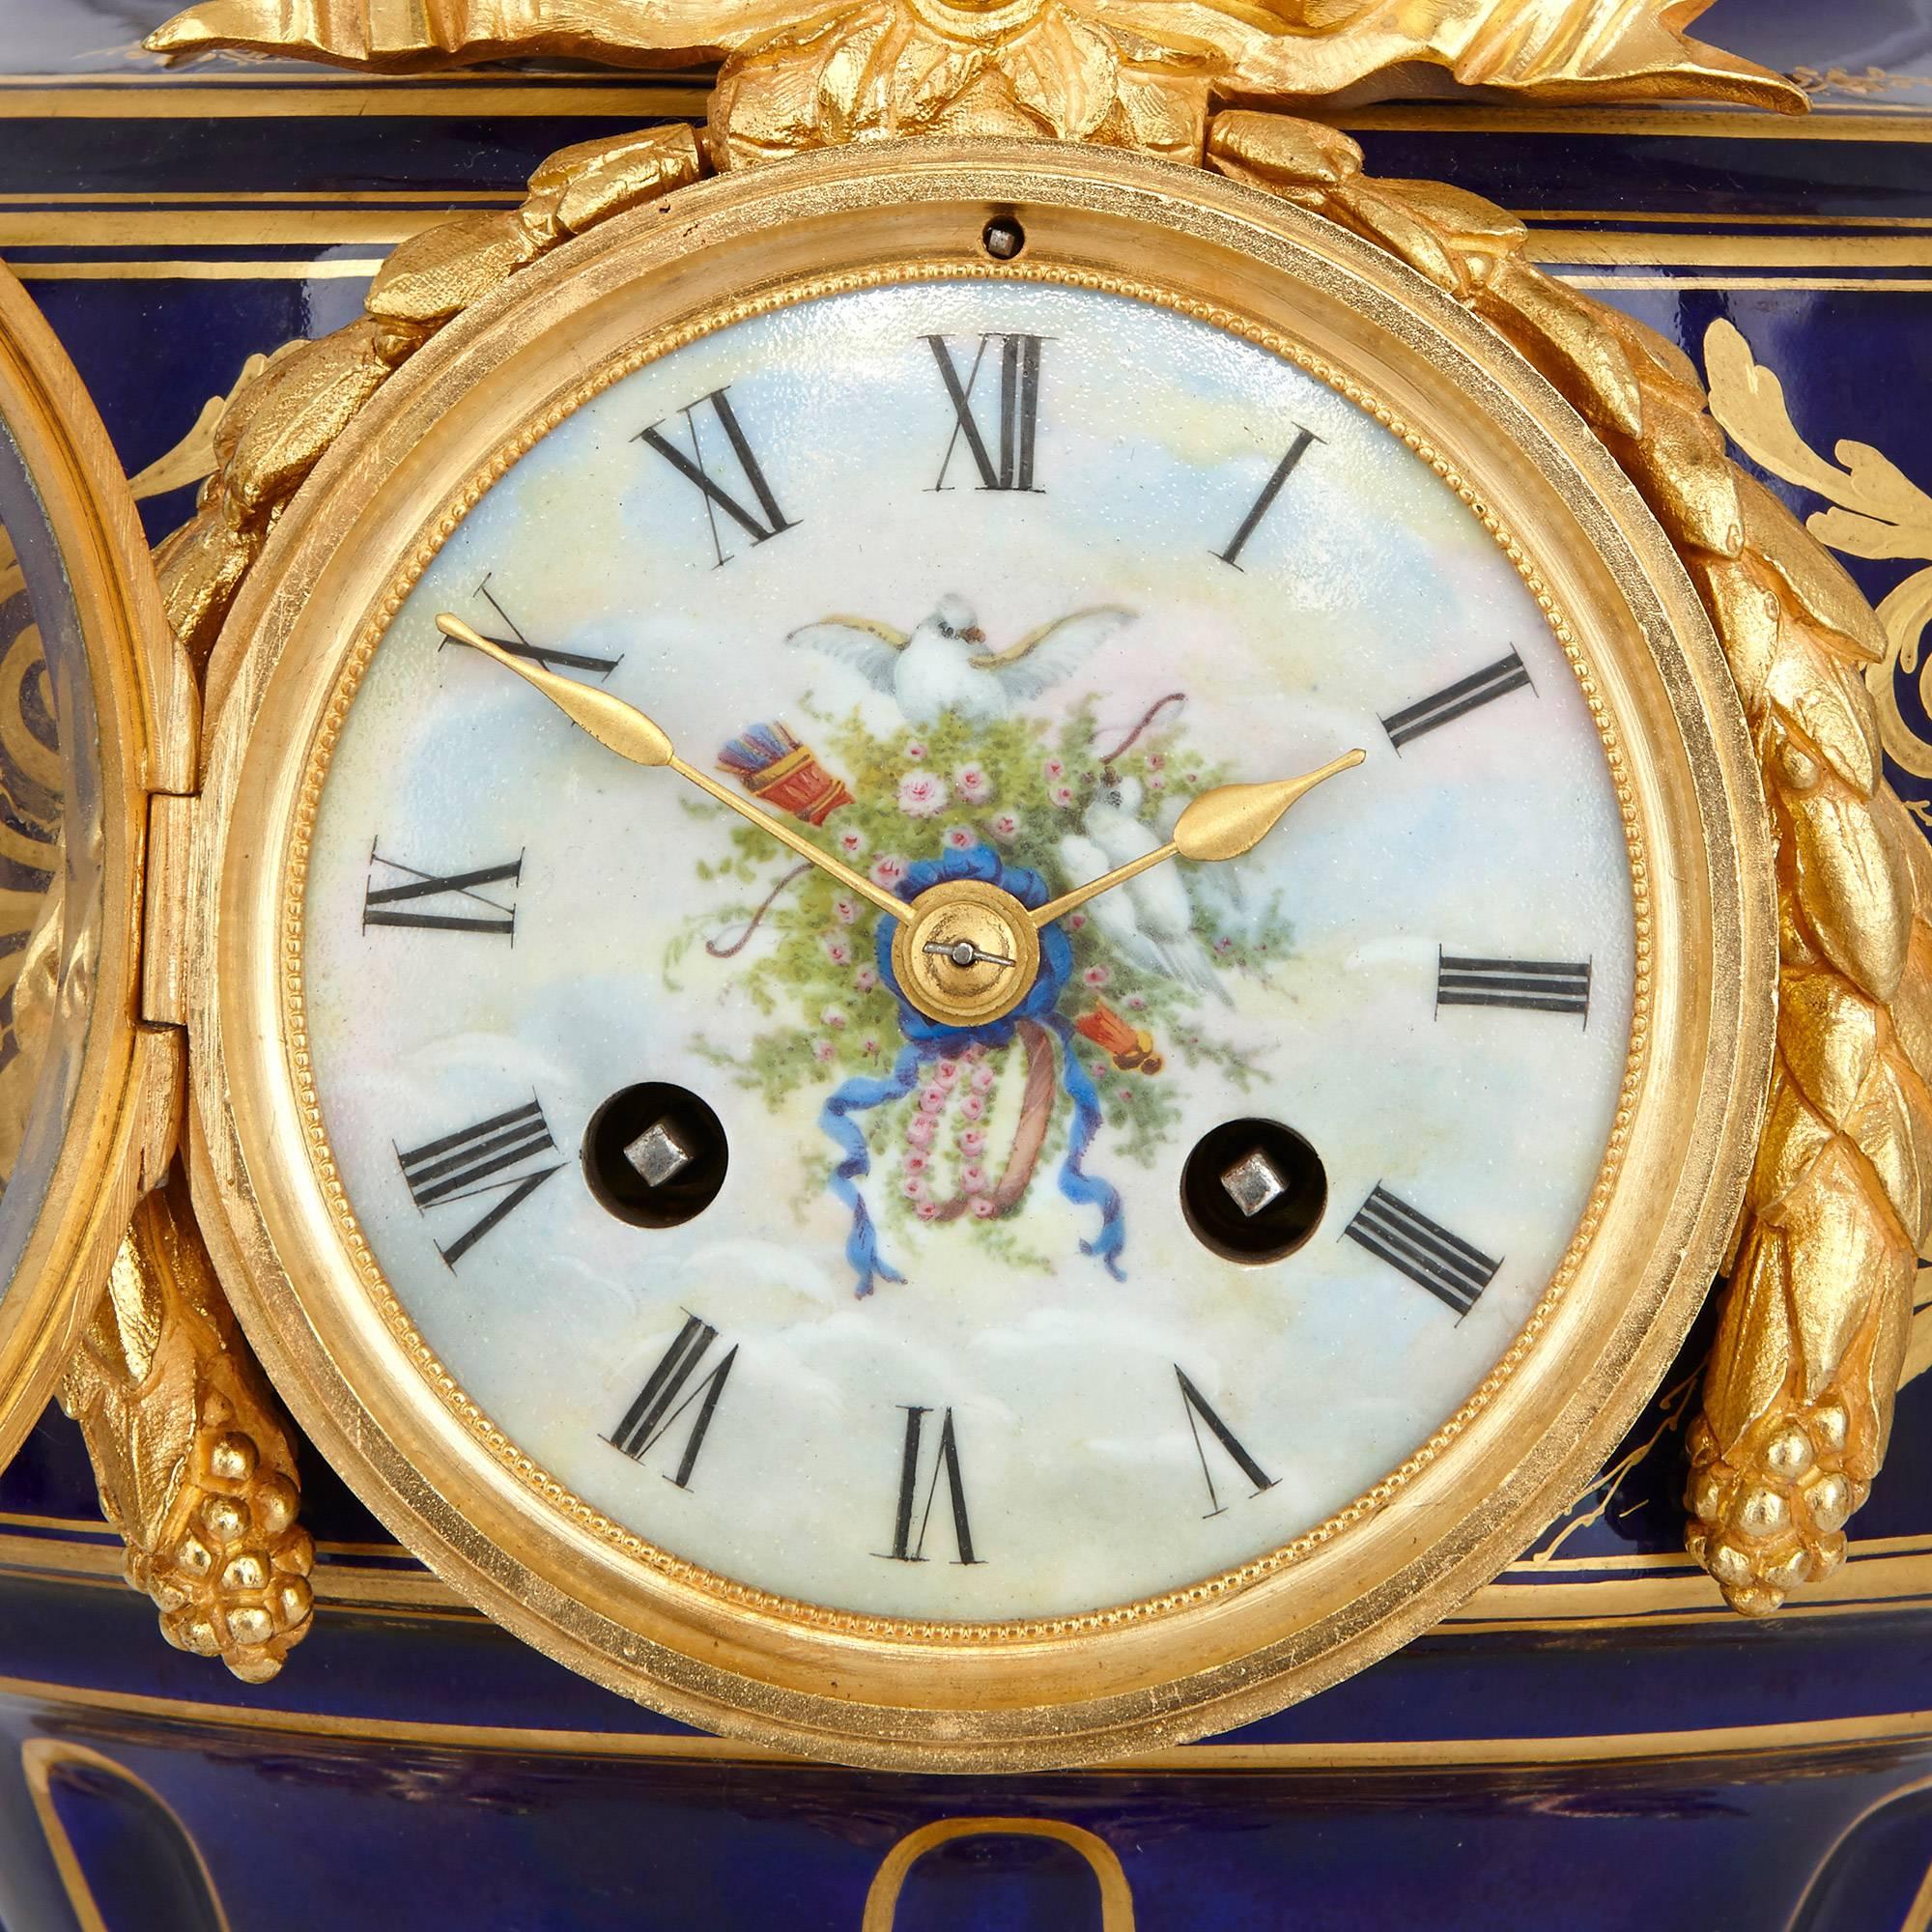 Cette fantastique horloge garnie est une pièce de design vraiment exceptionnelle, qui reprend l'élégante beauté du travail de la manufacture de porcelaine de Sèvres. Comprenant un ensemble de trois vases magnifiquement décorés, cette garniture